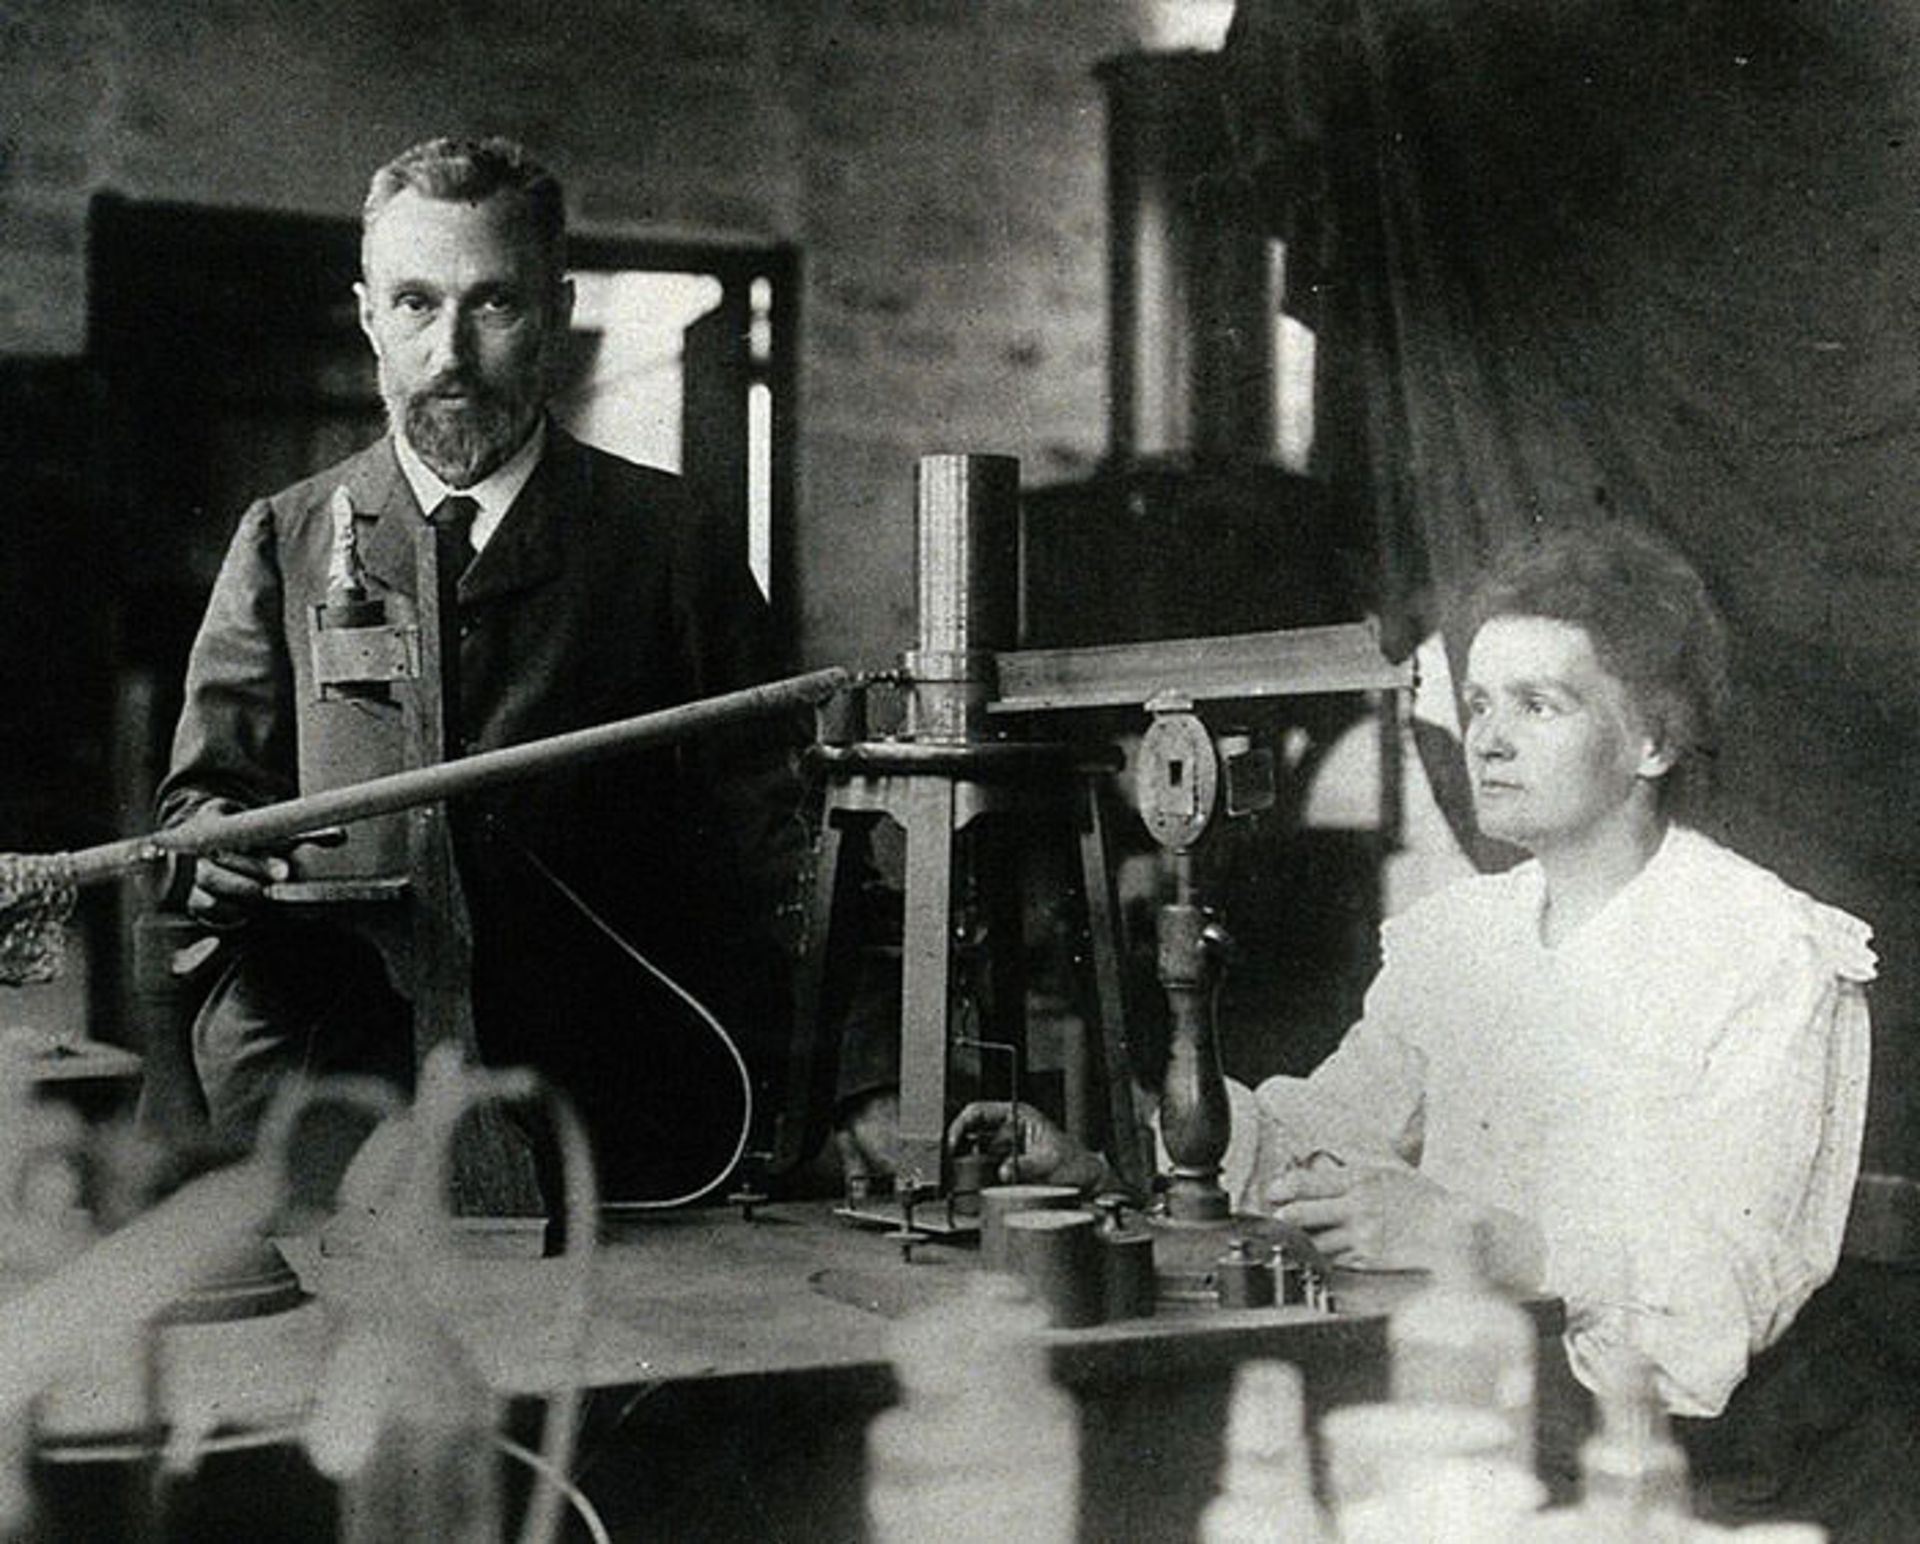 مرجع متخصصين ايران ماري كوري / Marie Curie